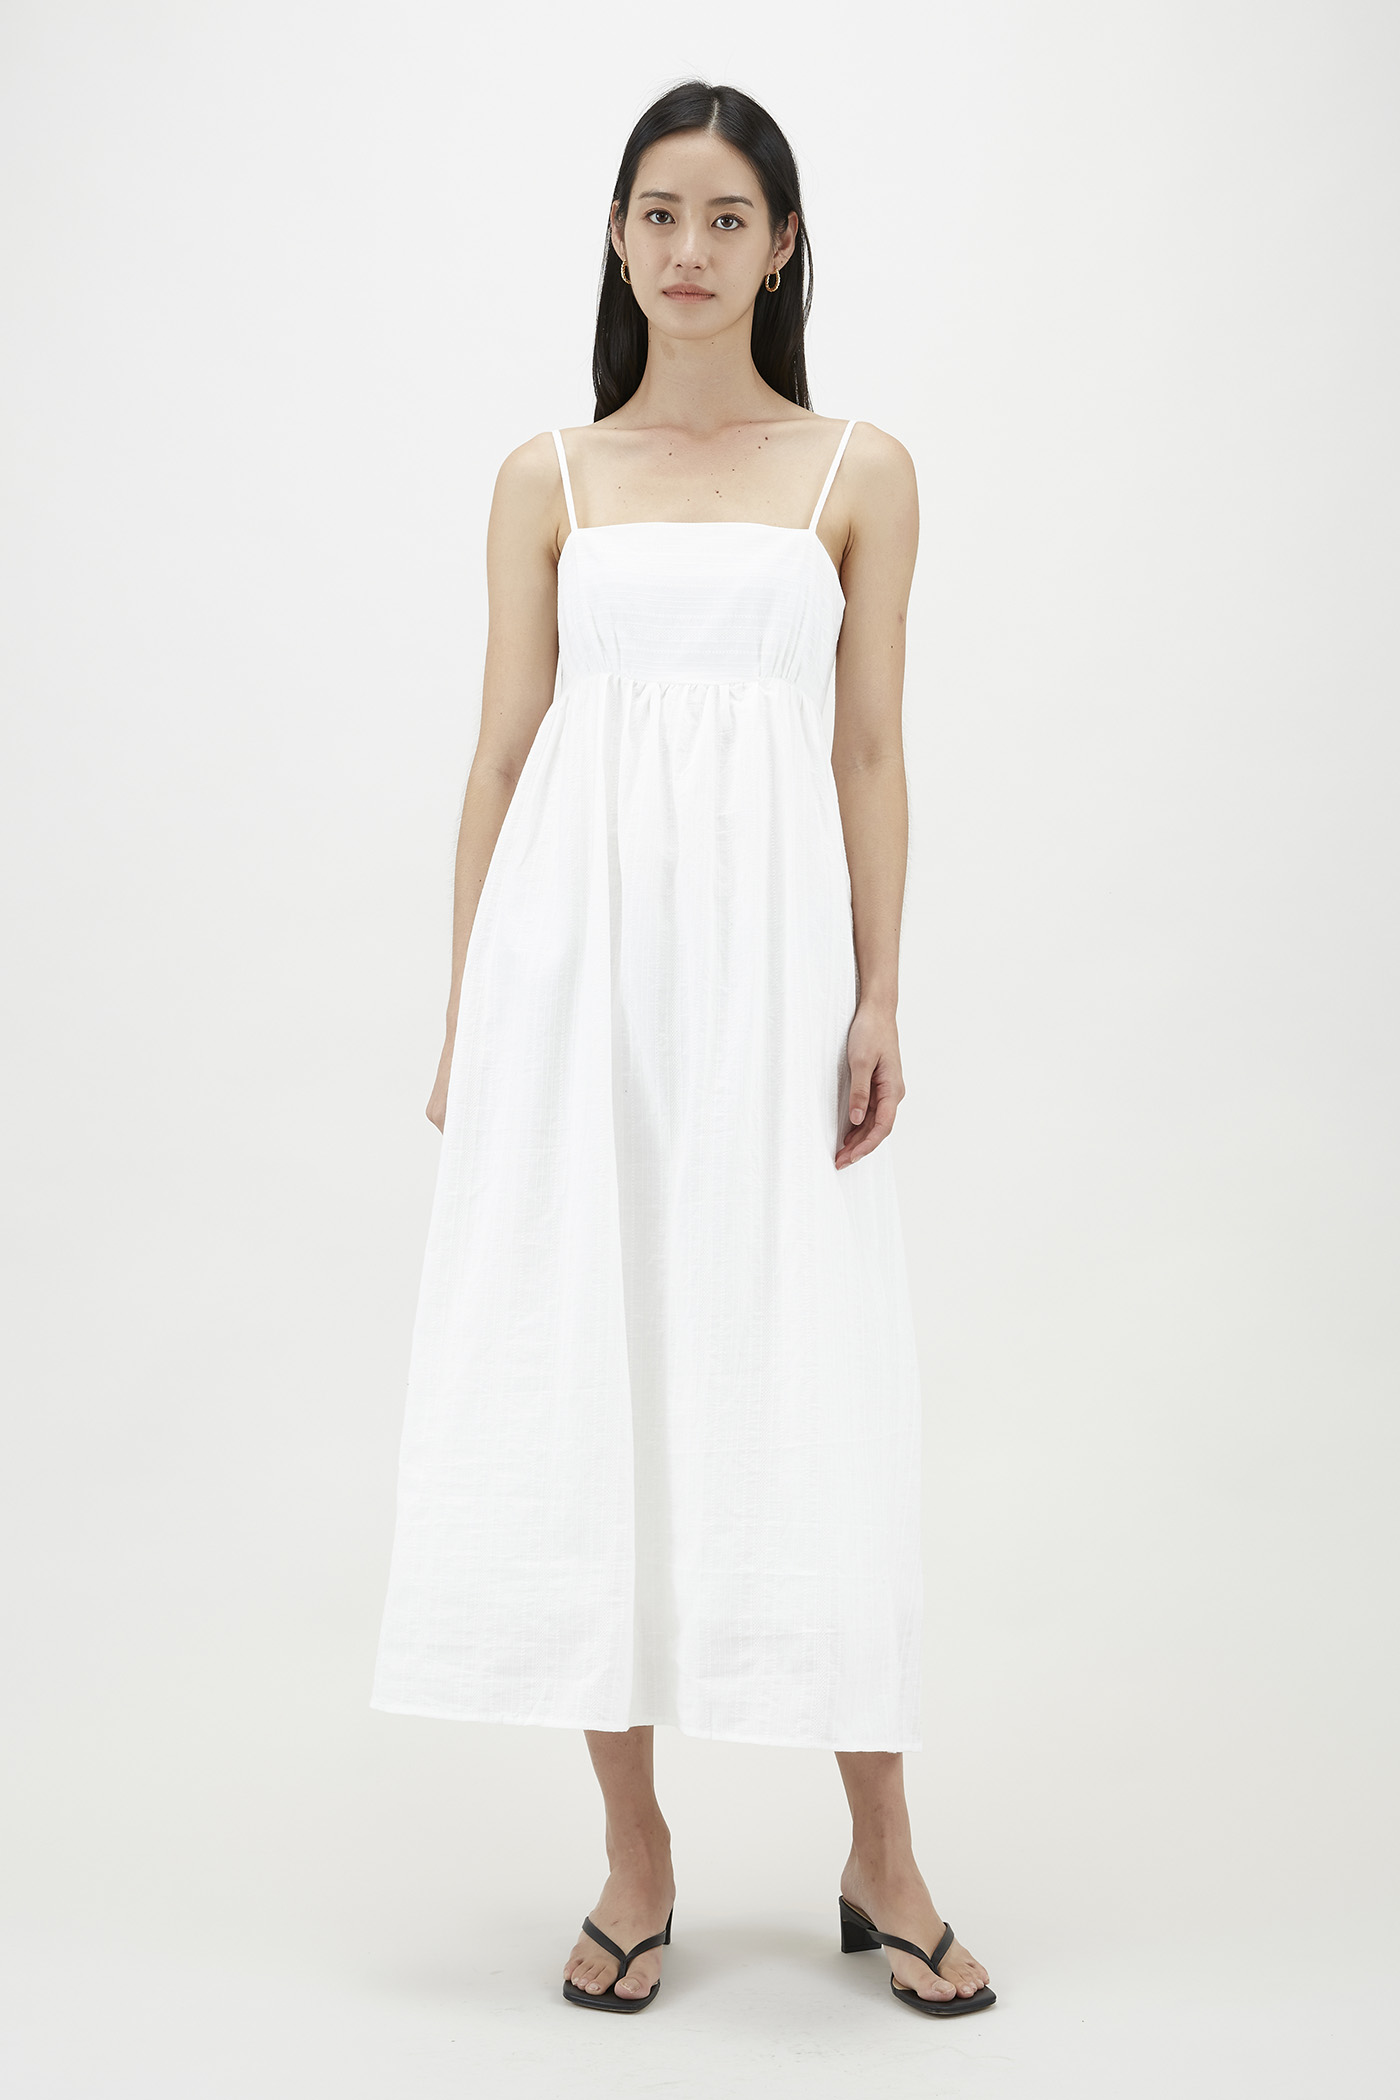 Rosena Textured Empire-Waist Dress